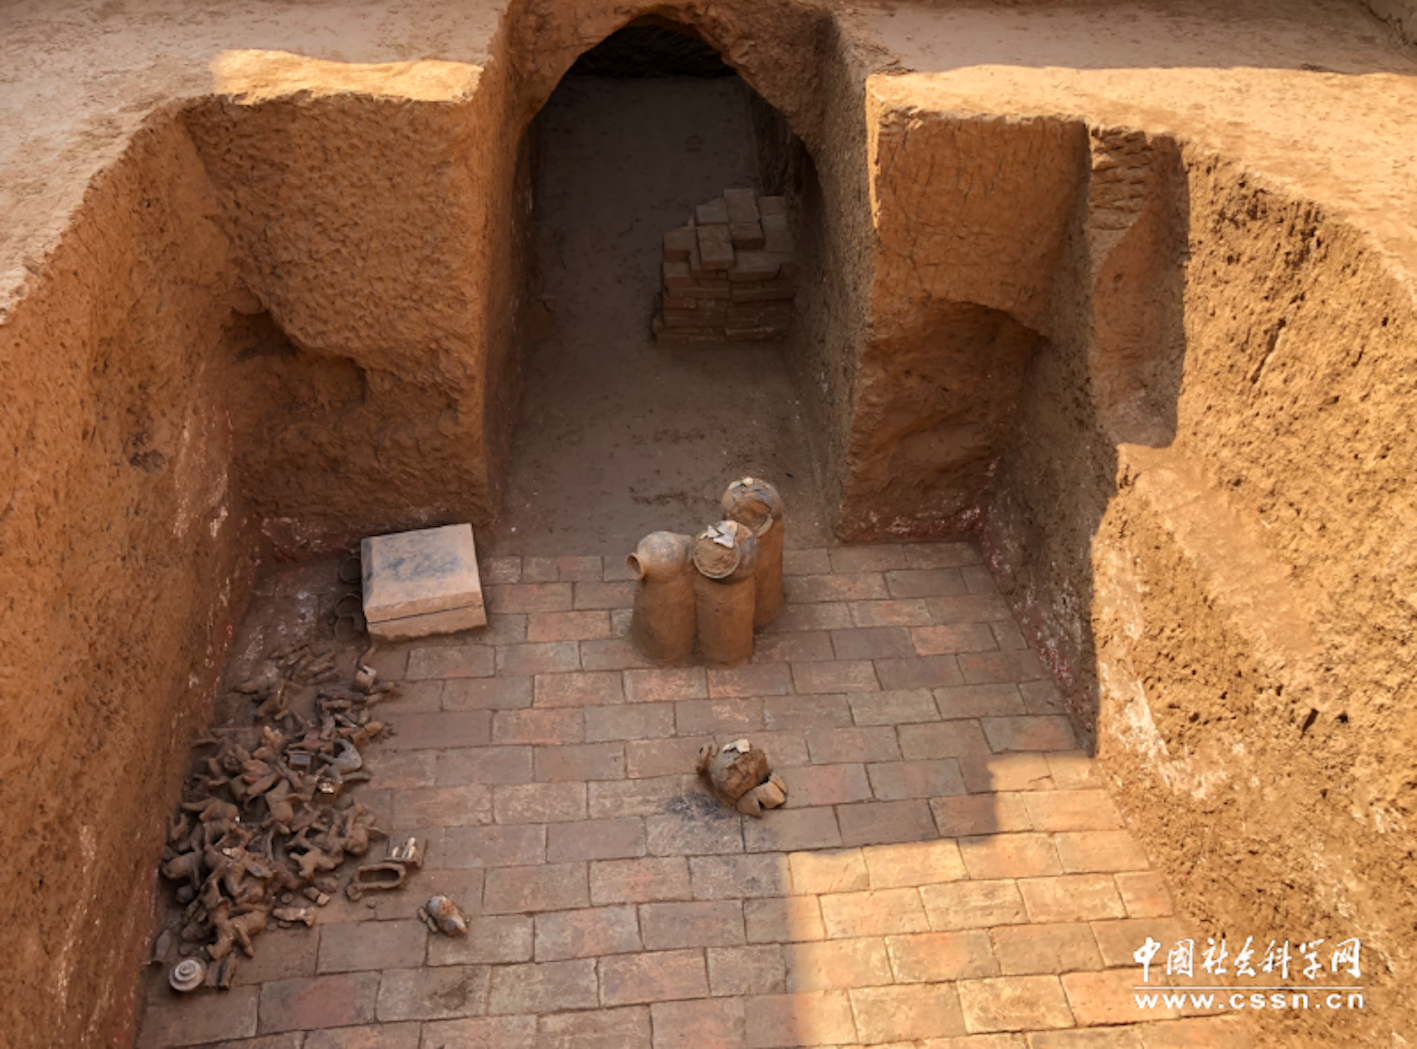 Des archéologues découvrent le tombeau d’un ancien empereur vieux de 1 500 ans en Chine